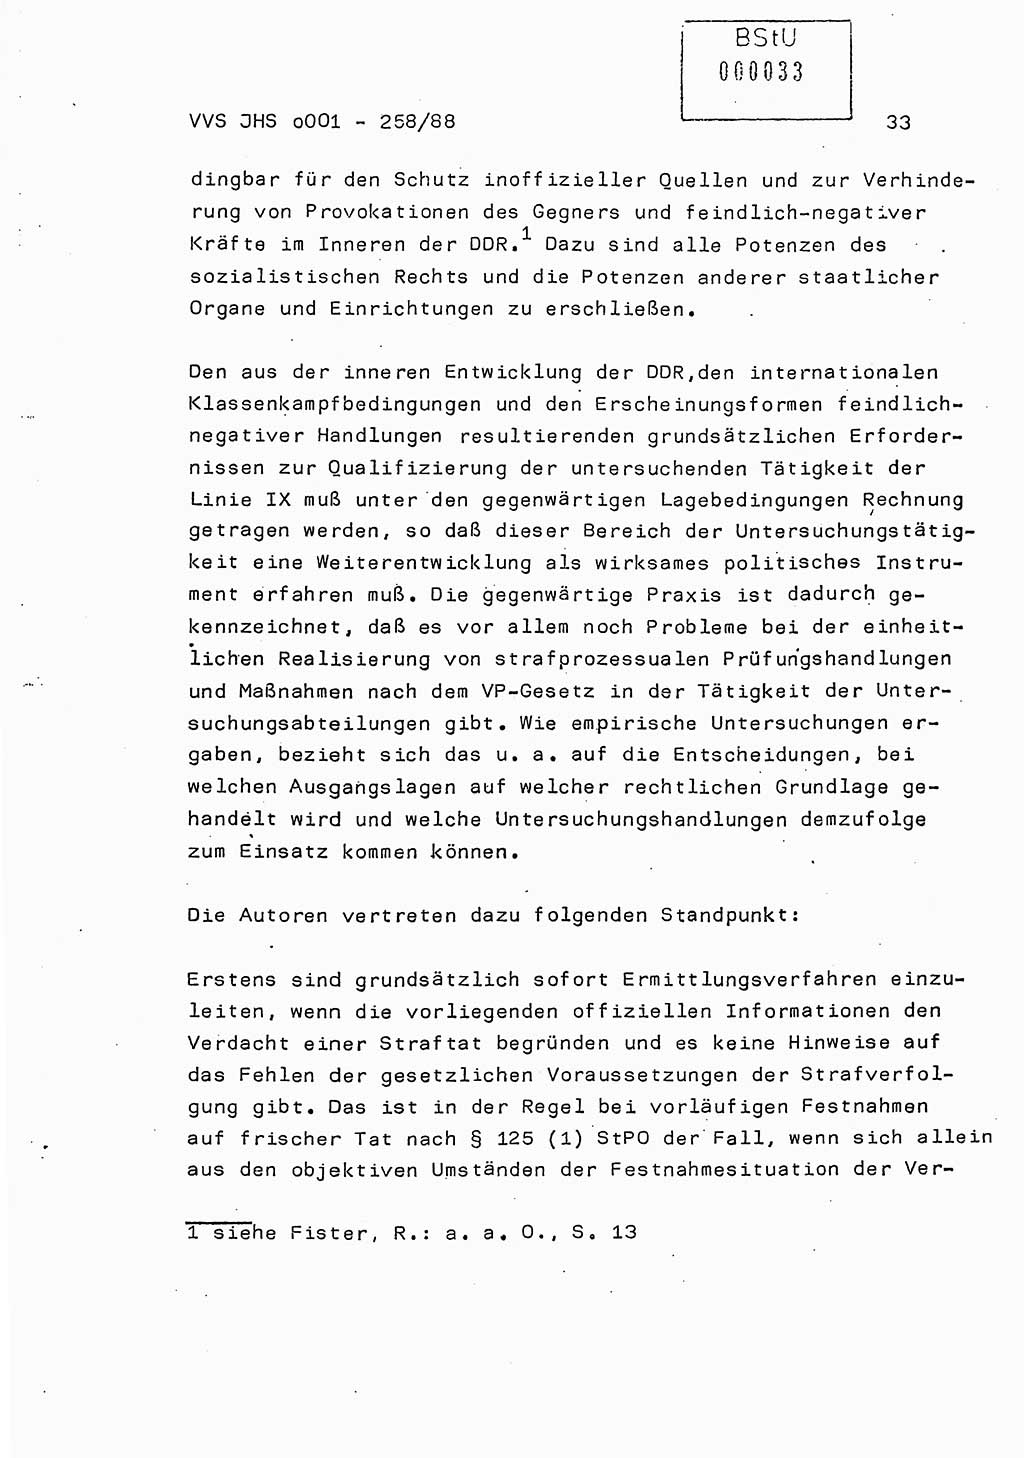 Dissertation, Oberleutnant Uwe Kärsten (JHS), Hauptmann Dr. Joachim Henkel (JHS), Oberstleutnant Werner Mählitz (Leiter der Abt. Ⅸ BV Rostock), Oberstleutnant Jürgen Tröge (HA Ⅸ/AKG), Oberstleutnant Winfried Ziegler (HA Ⅸ/9), Major Wolf-Rüdiger Wurzler (JHS), Ministerium für Staatssicherheit (MfS) [Deutsche Demokratische Republik (DDR)], Juristische Hochschule (JHS), Vertrauliche Verschlußsache (VVS) o001-258/88, Potsdam 1988, Seite 33 (Diss. MfS DDR JHS VVS o001-258/88 1988, S. 33)